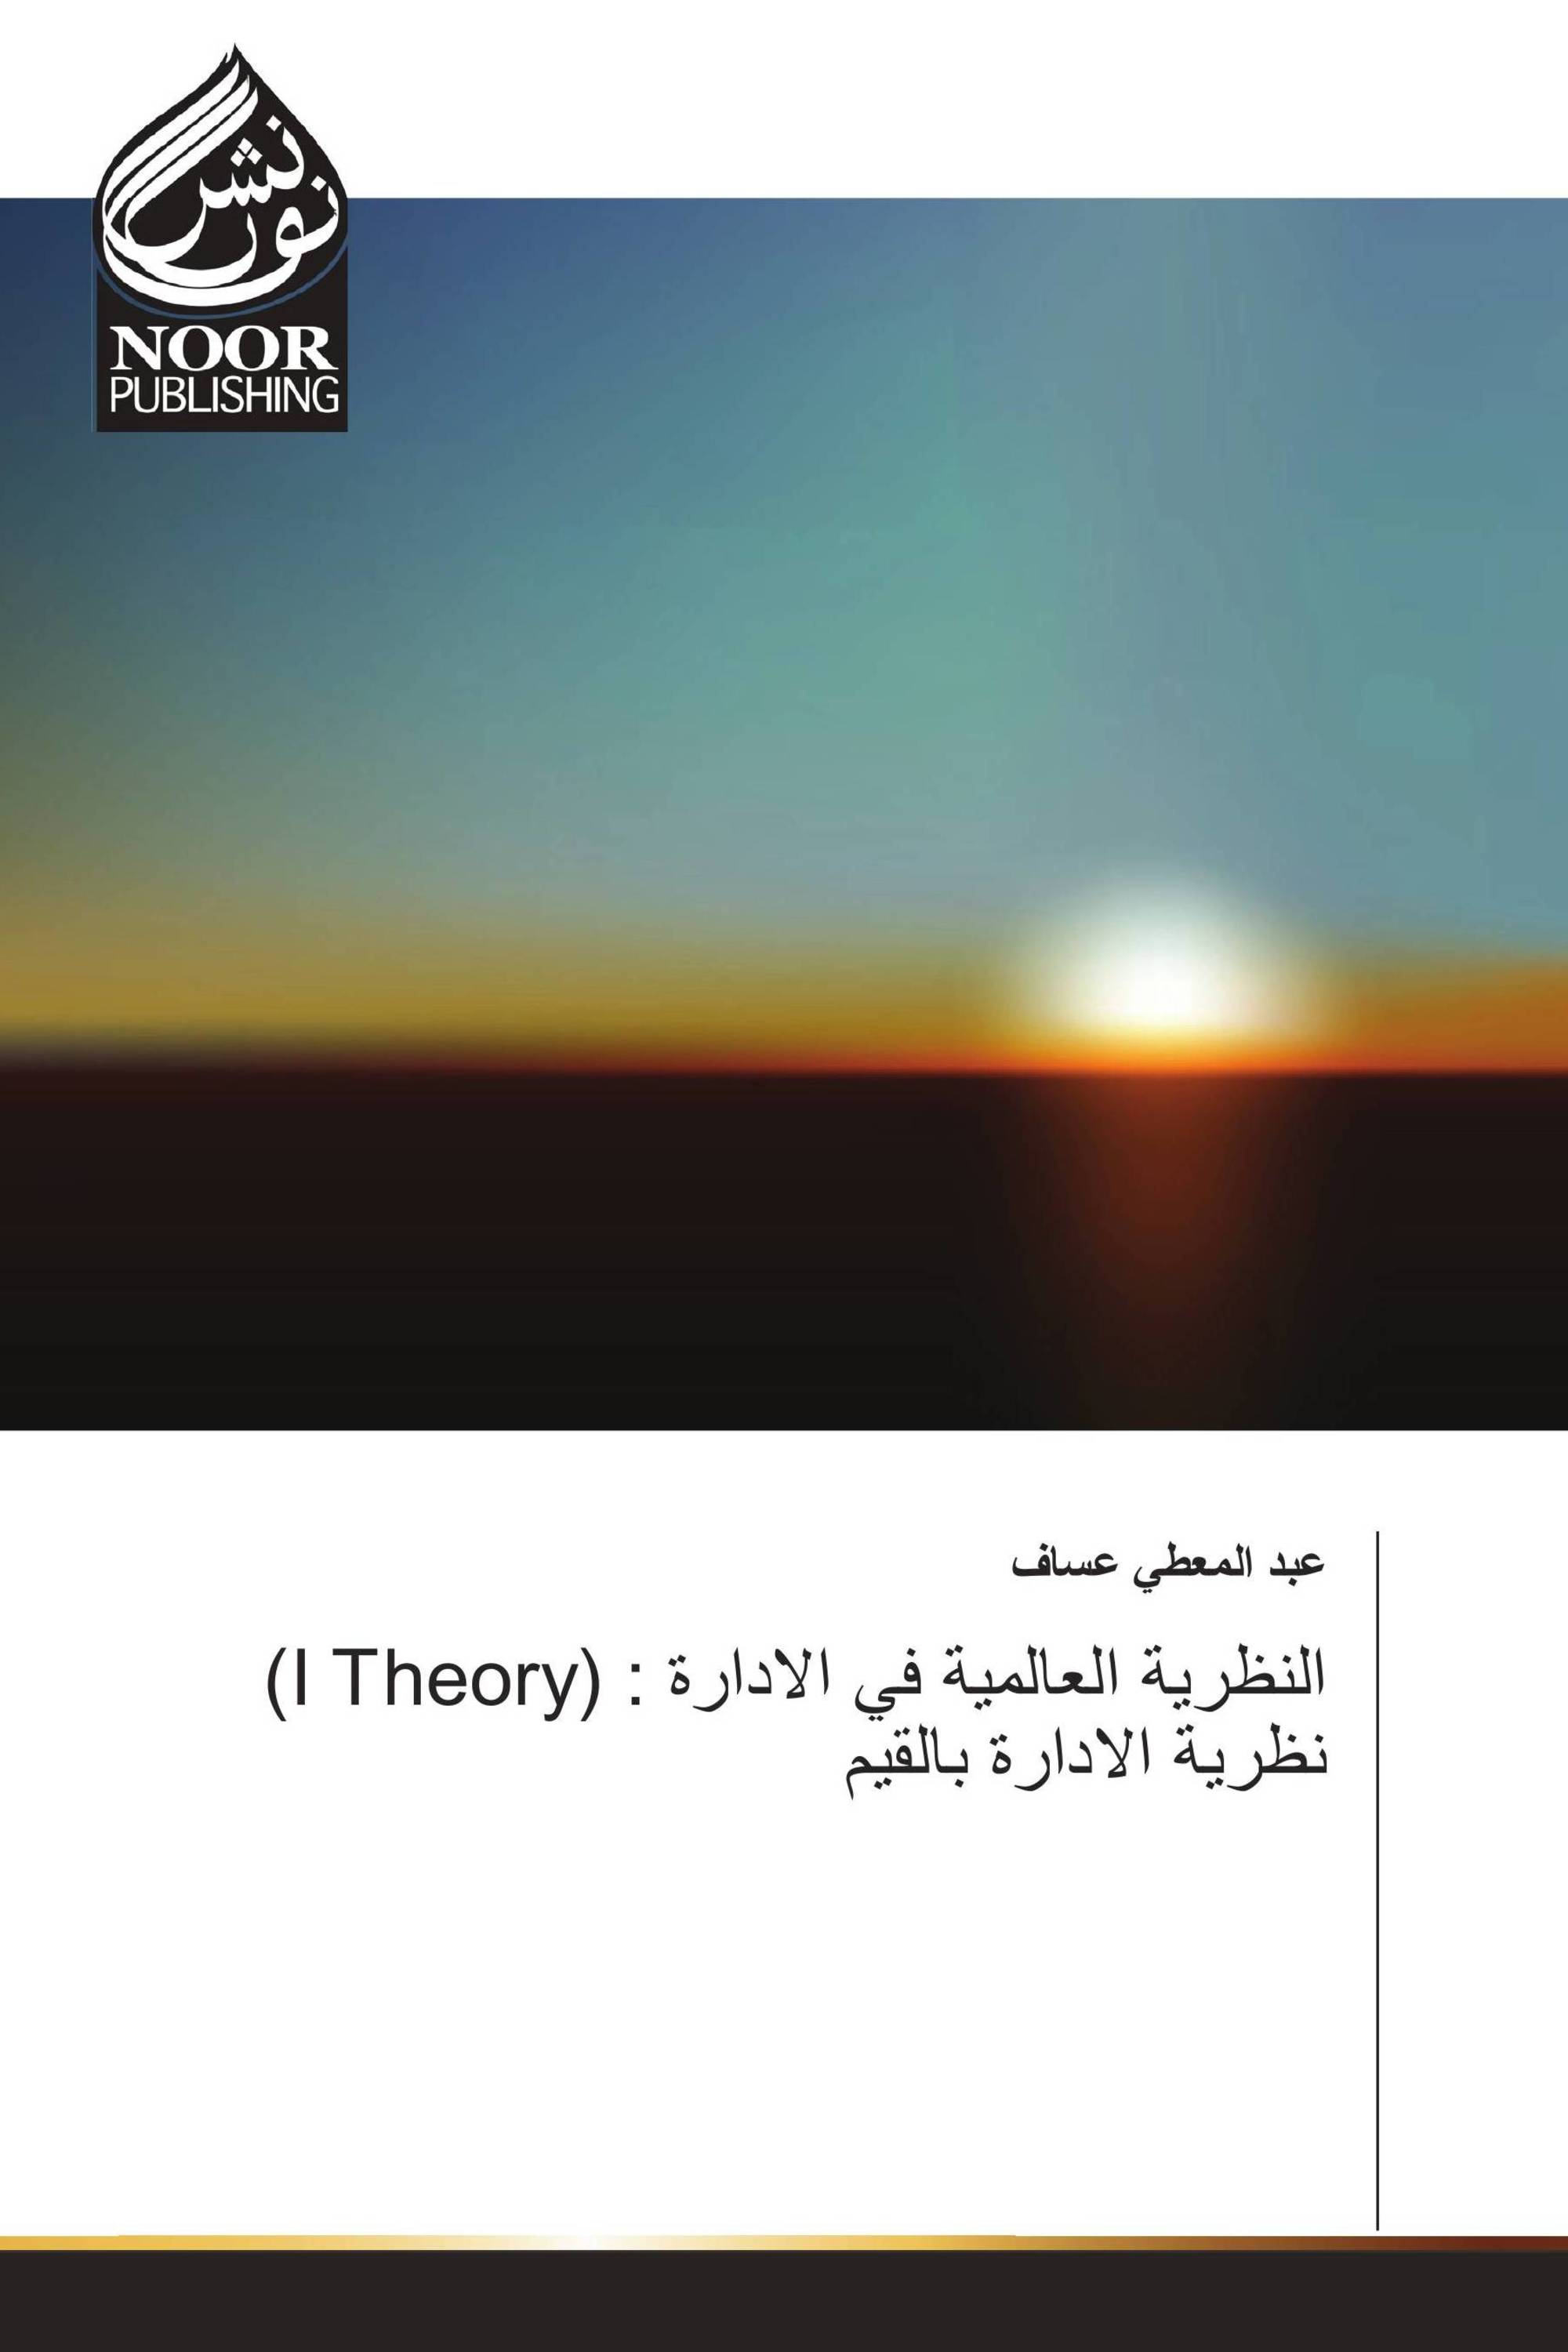 (I Theory) النظرية العالمية في الادارة : نظرية الادارة بالقيم